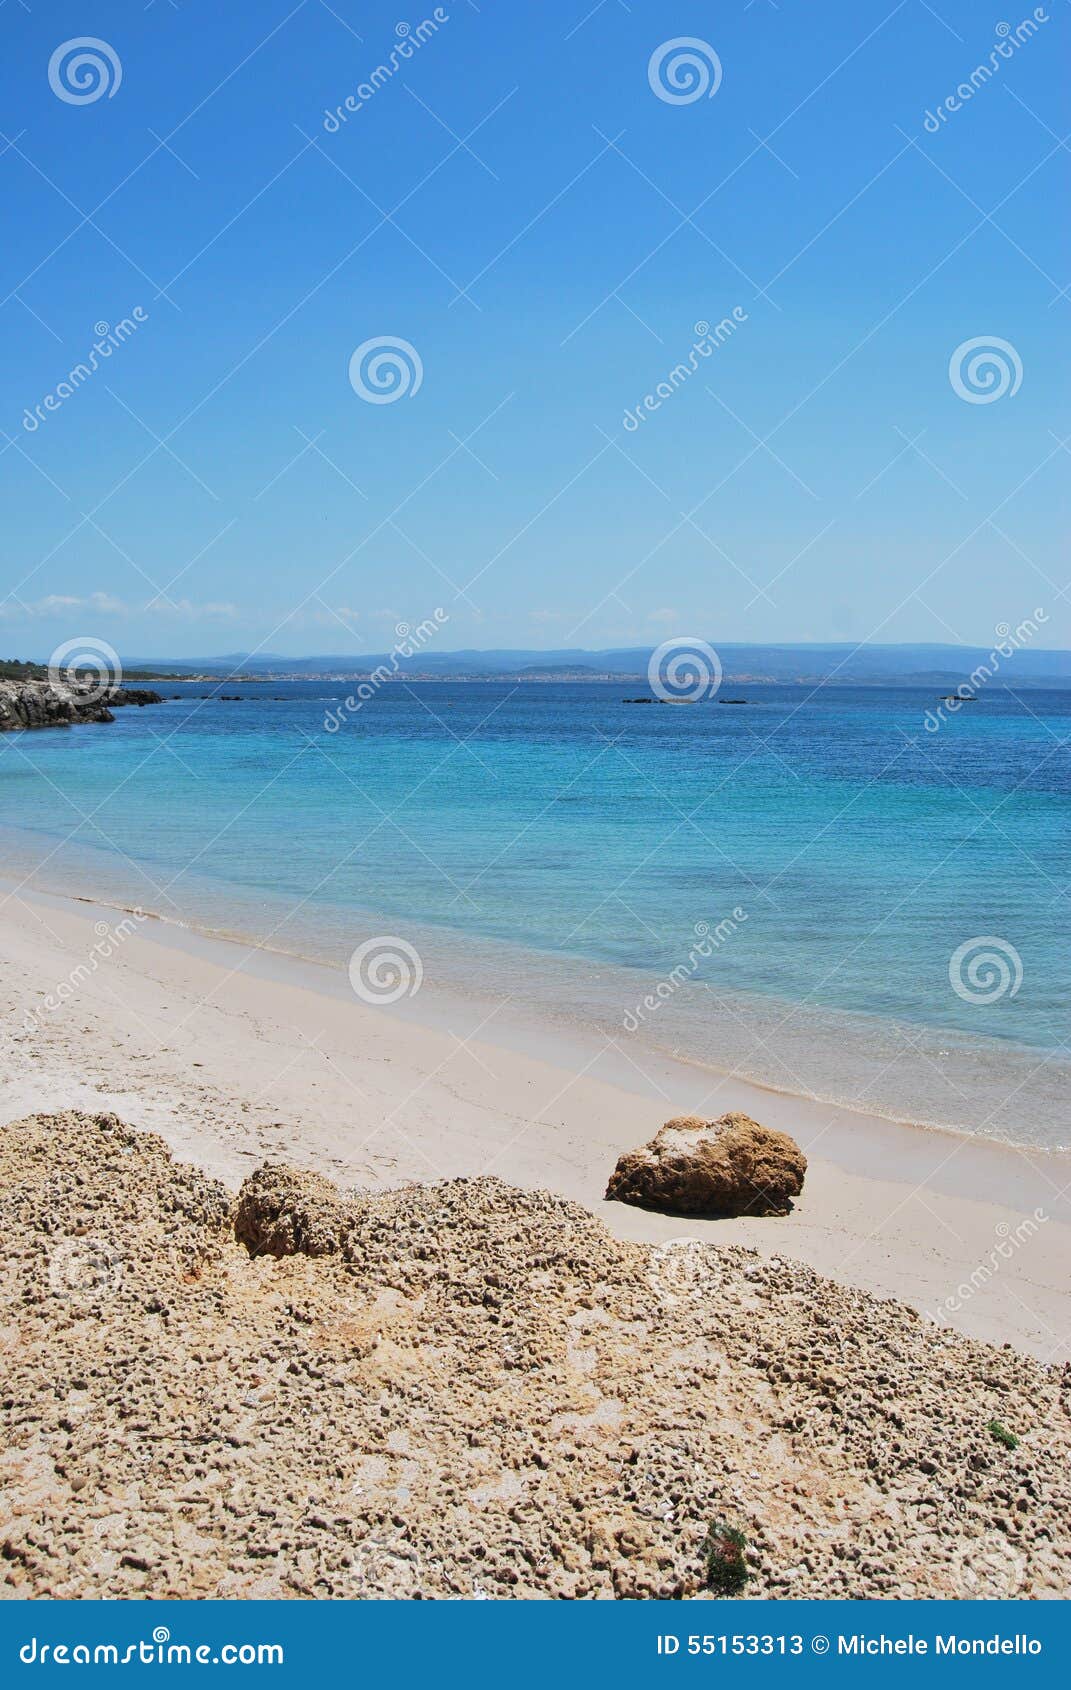 sardinian beach